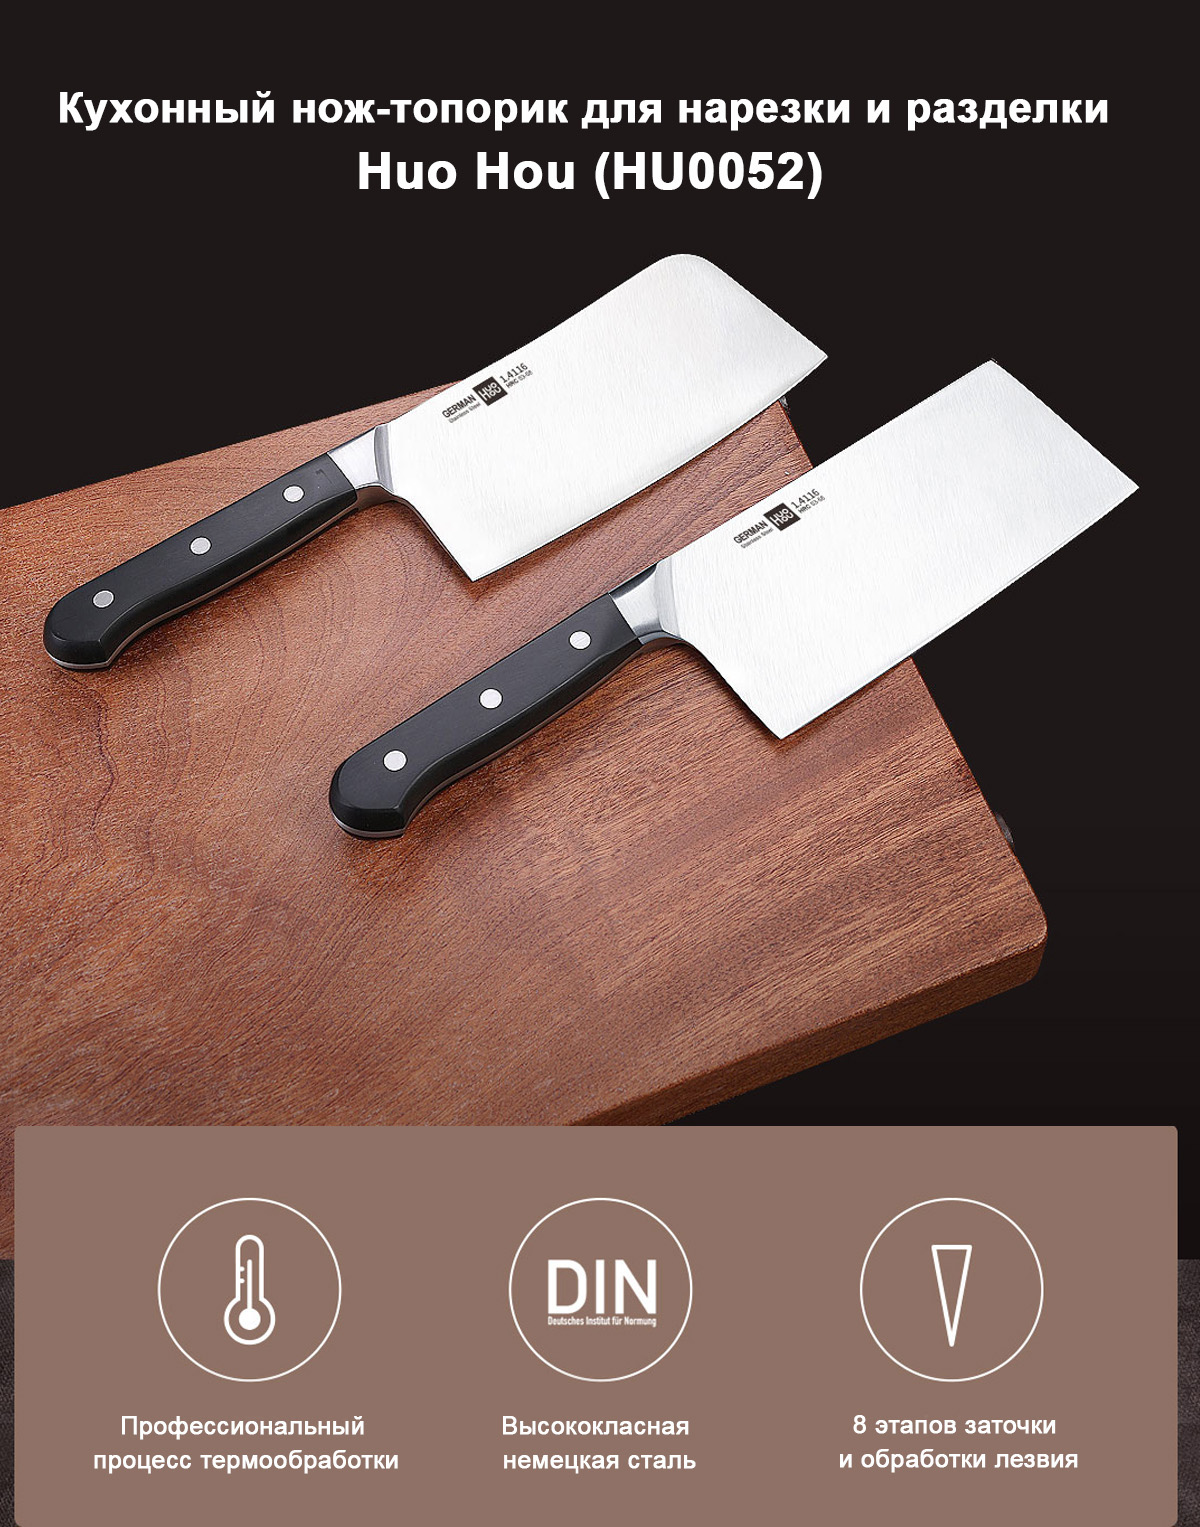 Кухонный нож-топорик для нарезки и разделки Huo Hou (HU0052)